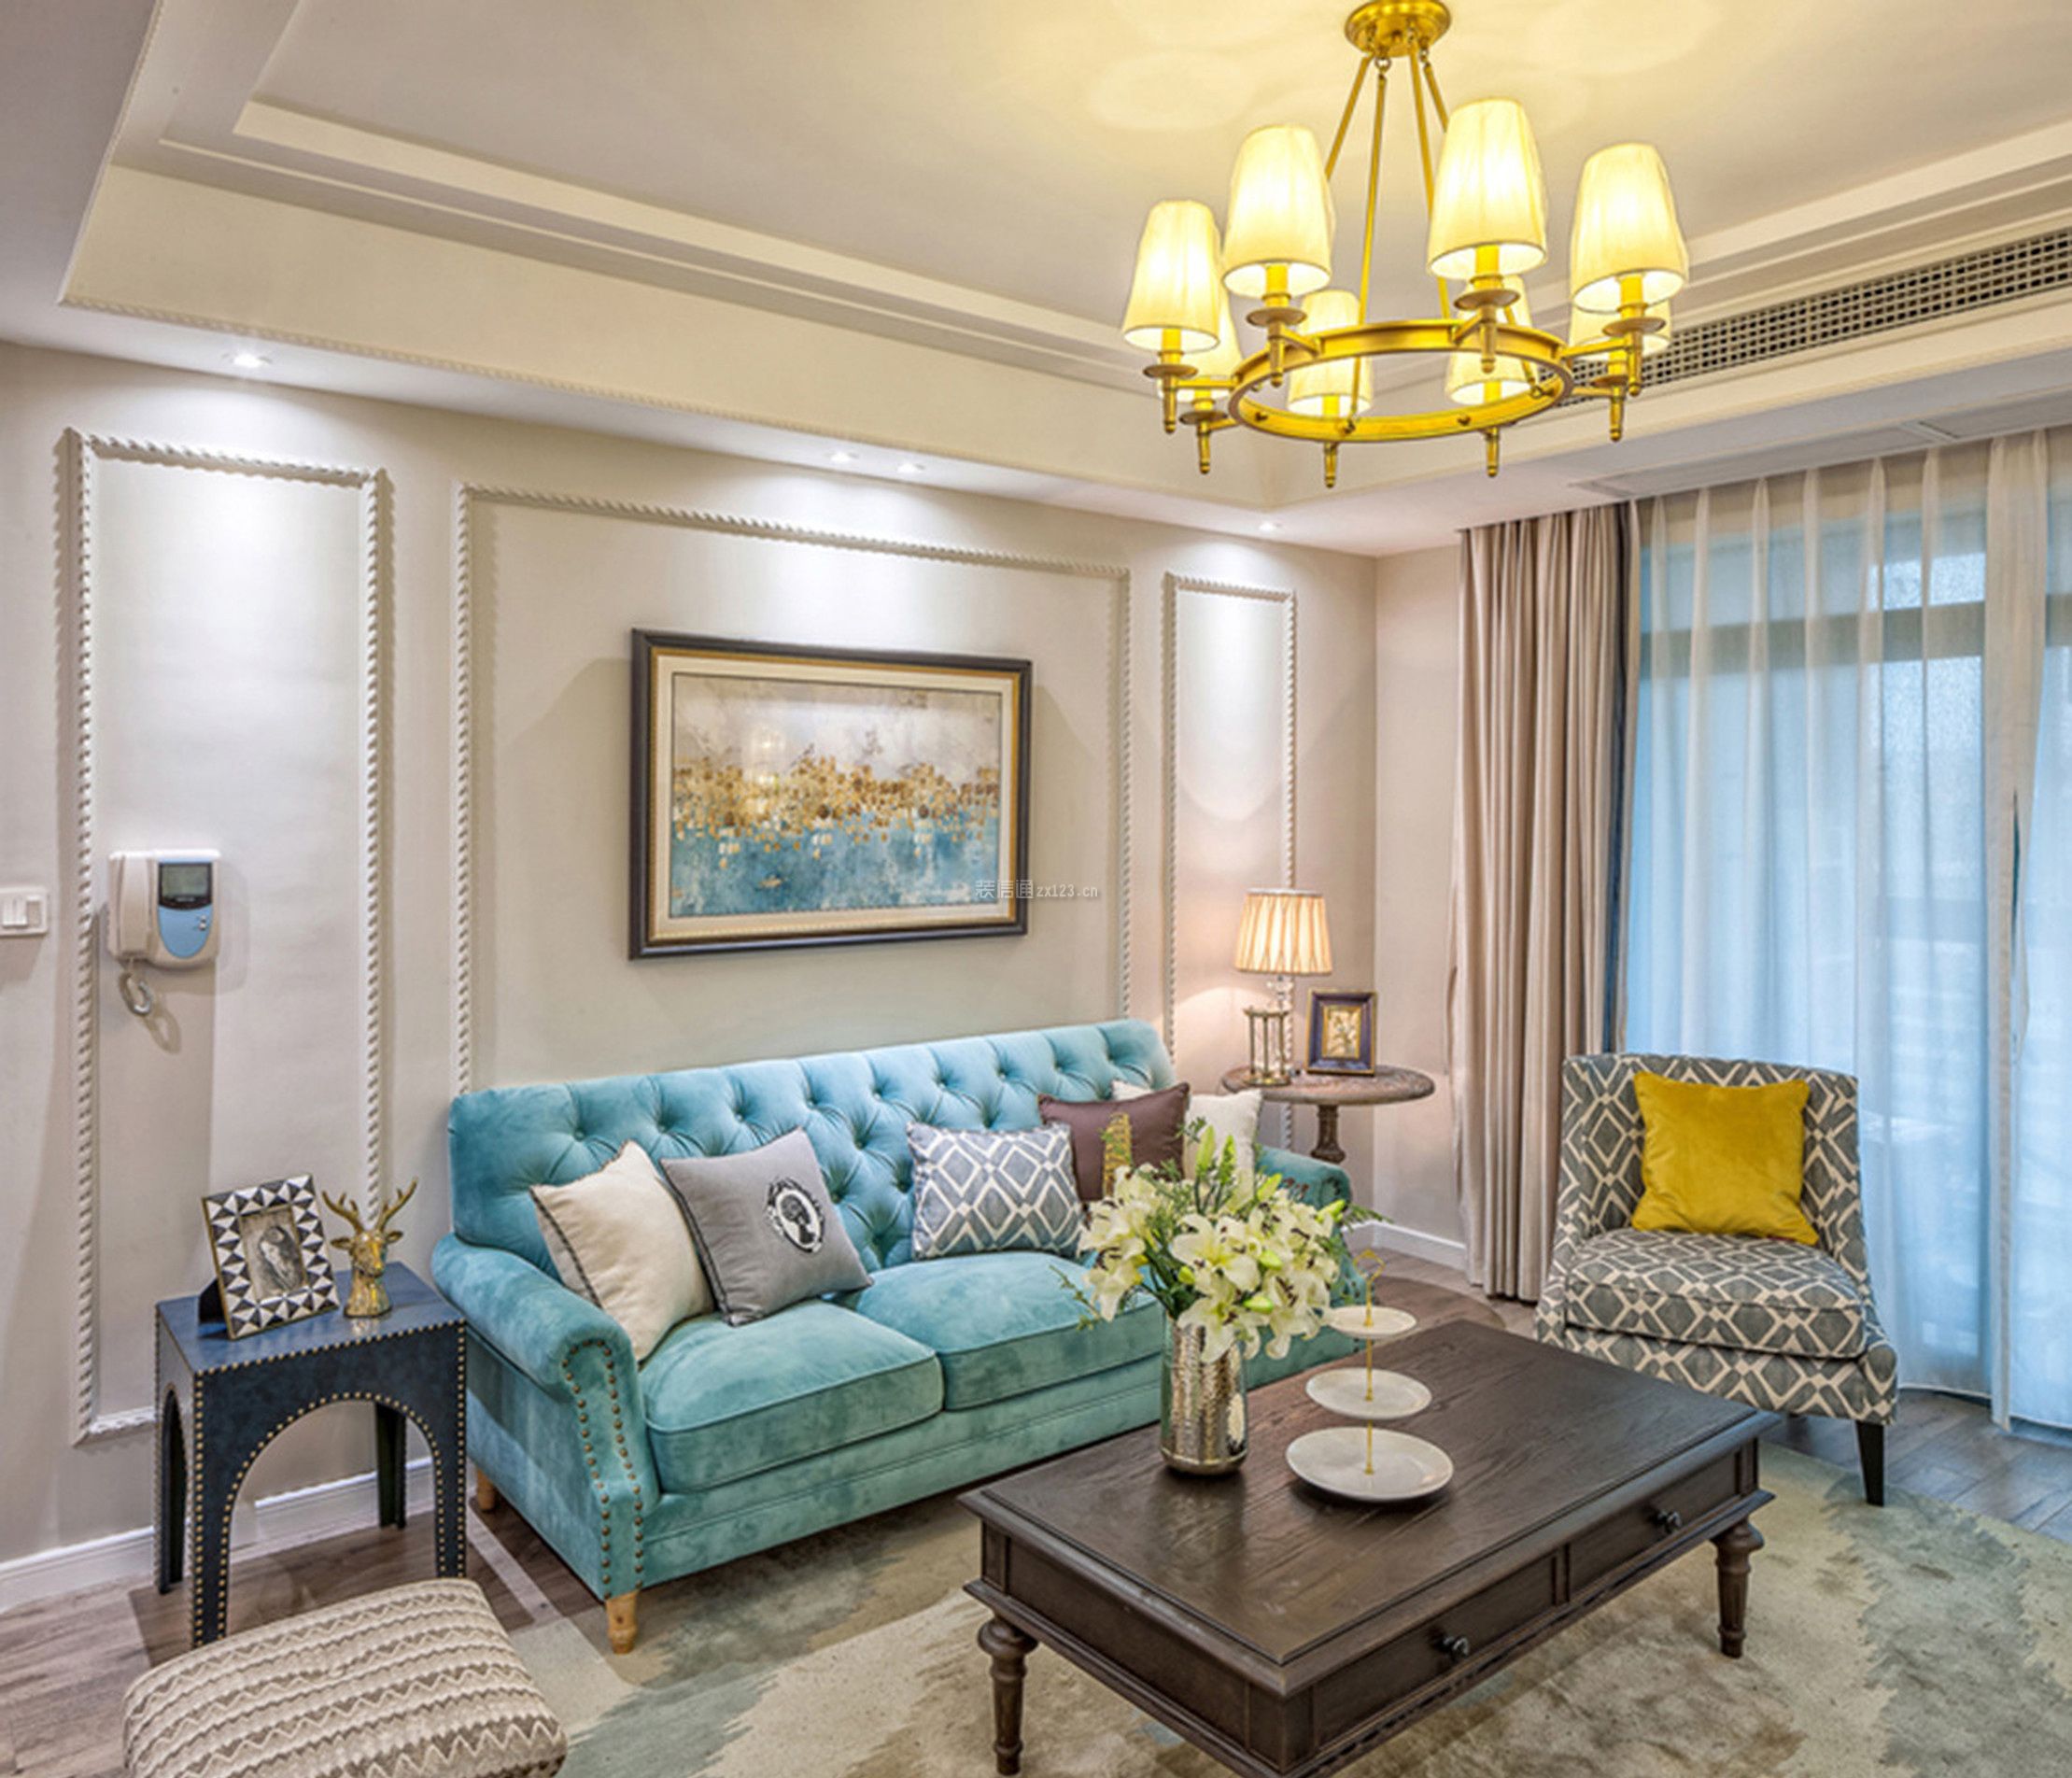 美式客厅现代风格装修图片 美式客厅沙发组合